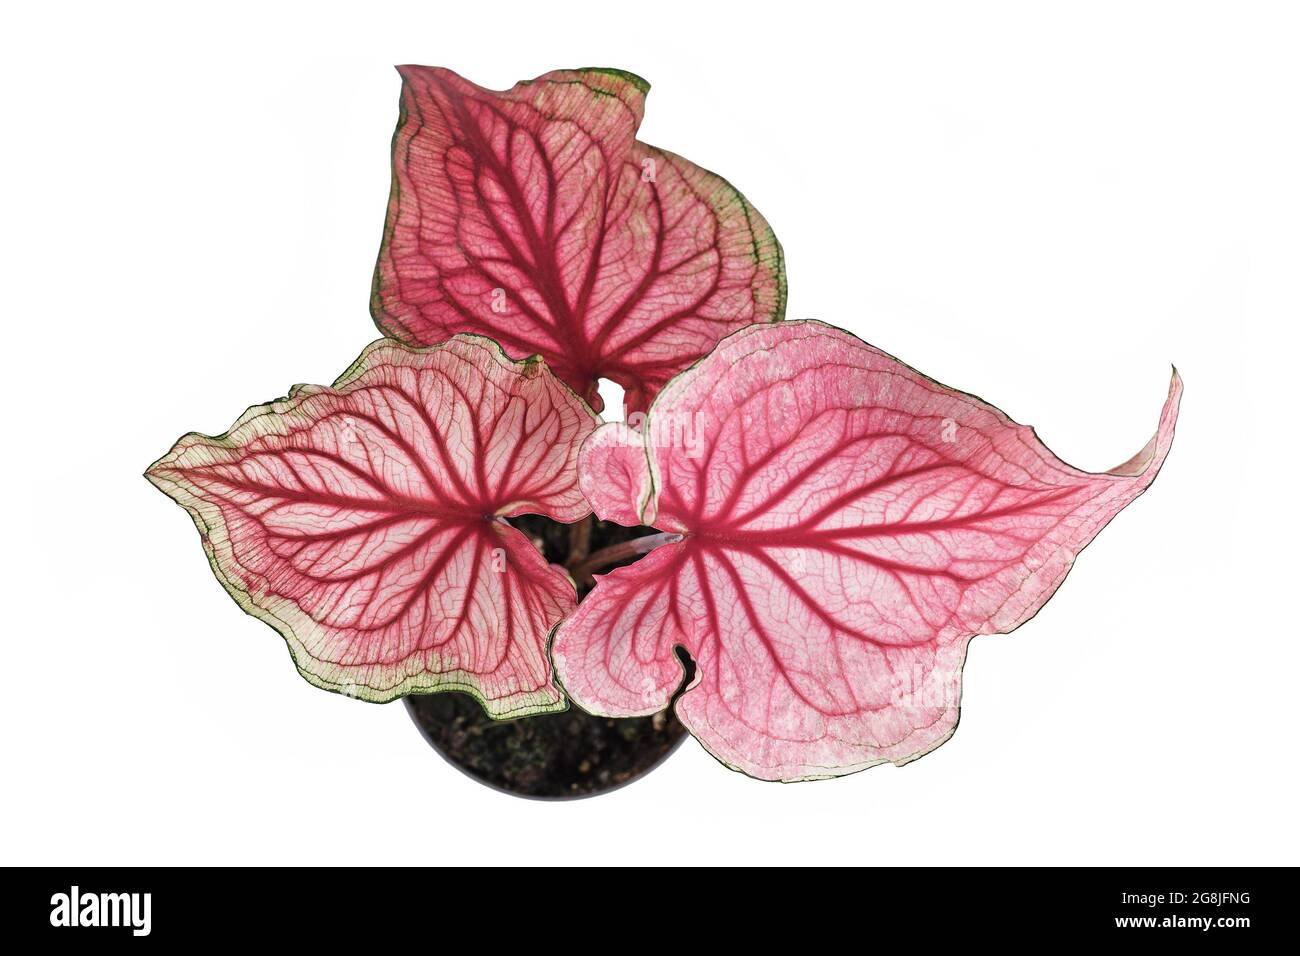 Vue de dessus de la plante exotique rose 'Caladium Florida Sweetheart' dans un pot de fleur isolé sur fond blanc Banque D'Images